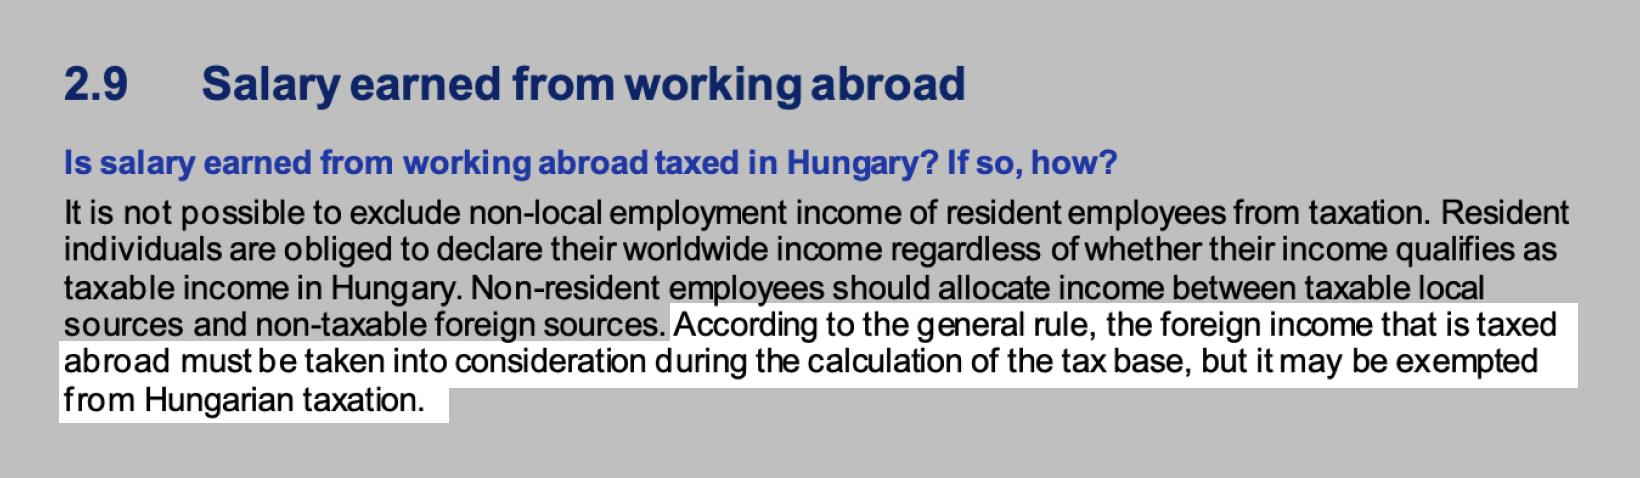 Иностранный доход, который облагается налогом за границей, должен учитываться при расчете налоговой базы в Венгрии, но может быть освобожден от венгерского налогообложения. Источник: assets.kpmg.com